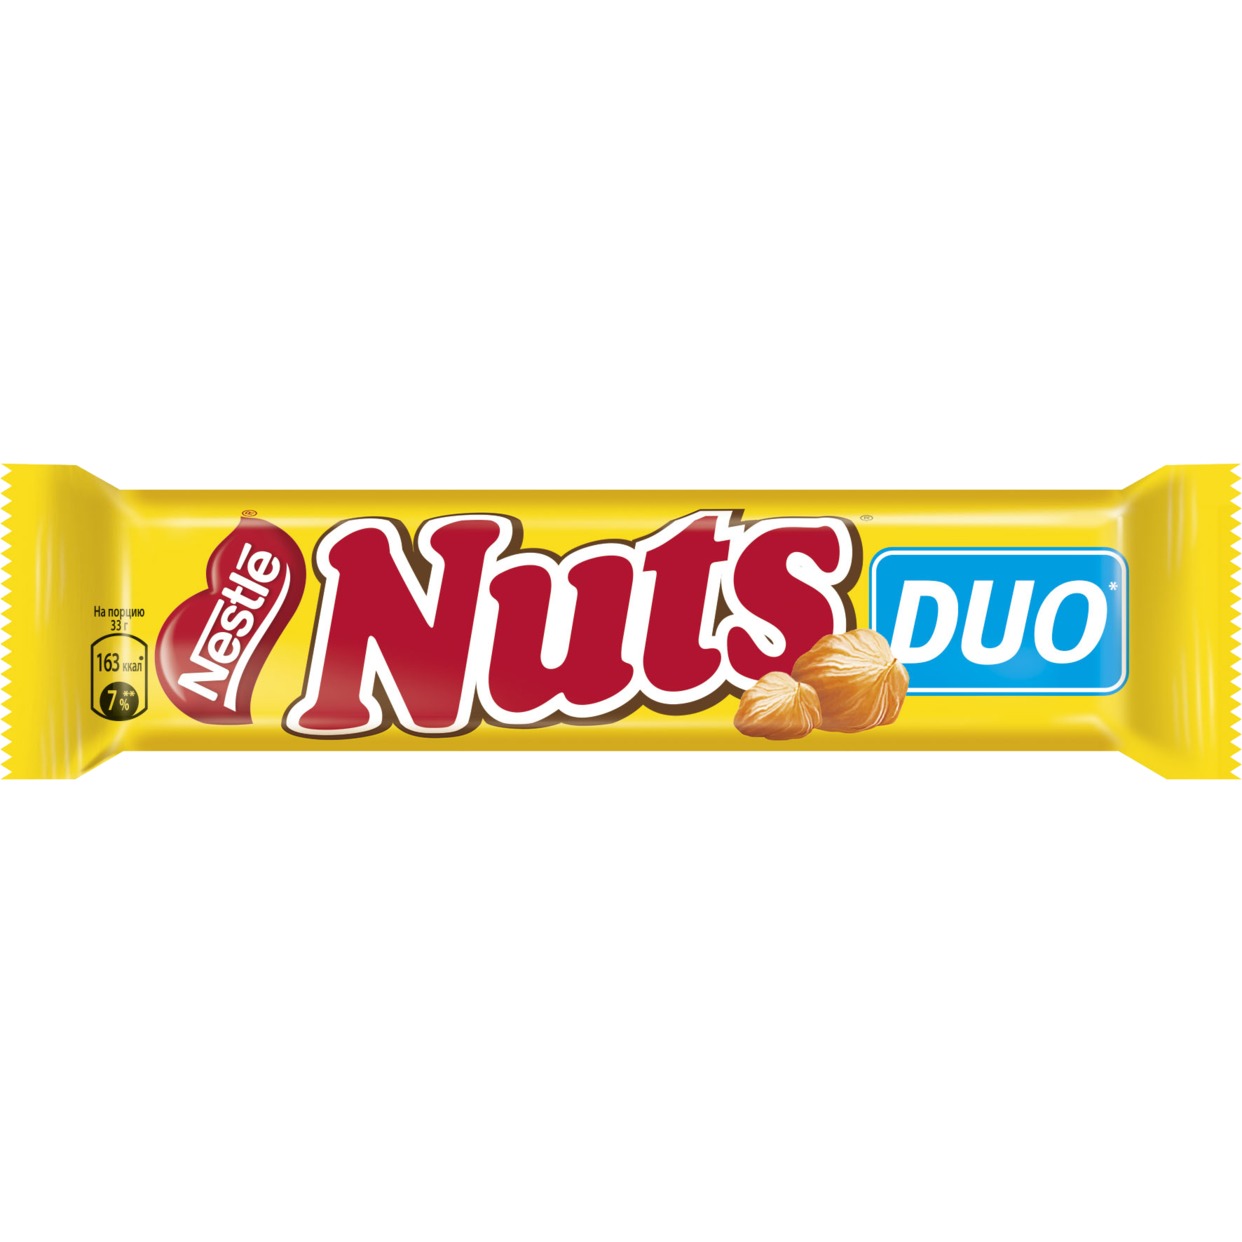 Батончик нат. Батончик натс мегабайт 66г. Шоколадный батончик Nuts Duo 66г. Батончик Nuts шоколадный 66 г. Шоколадный батончик натс дуо, 66 г.